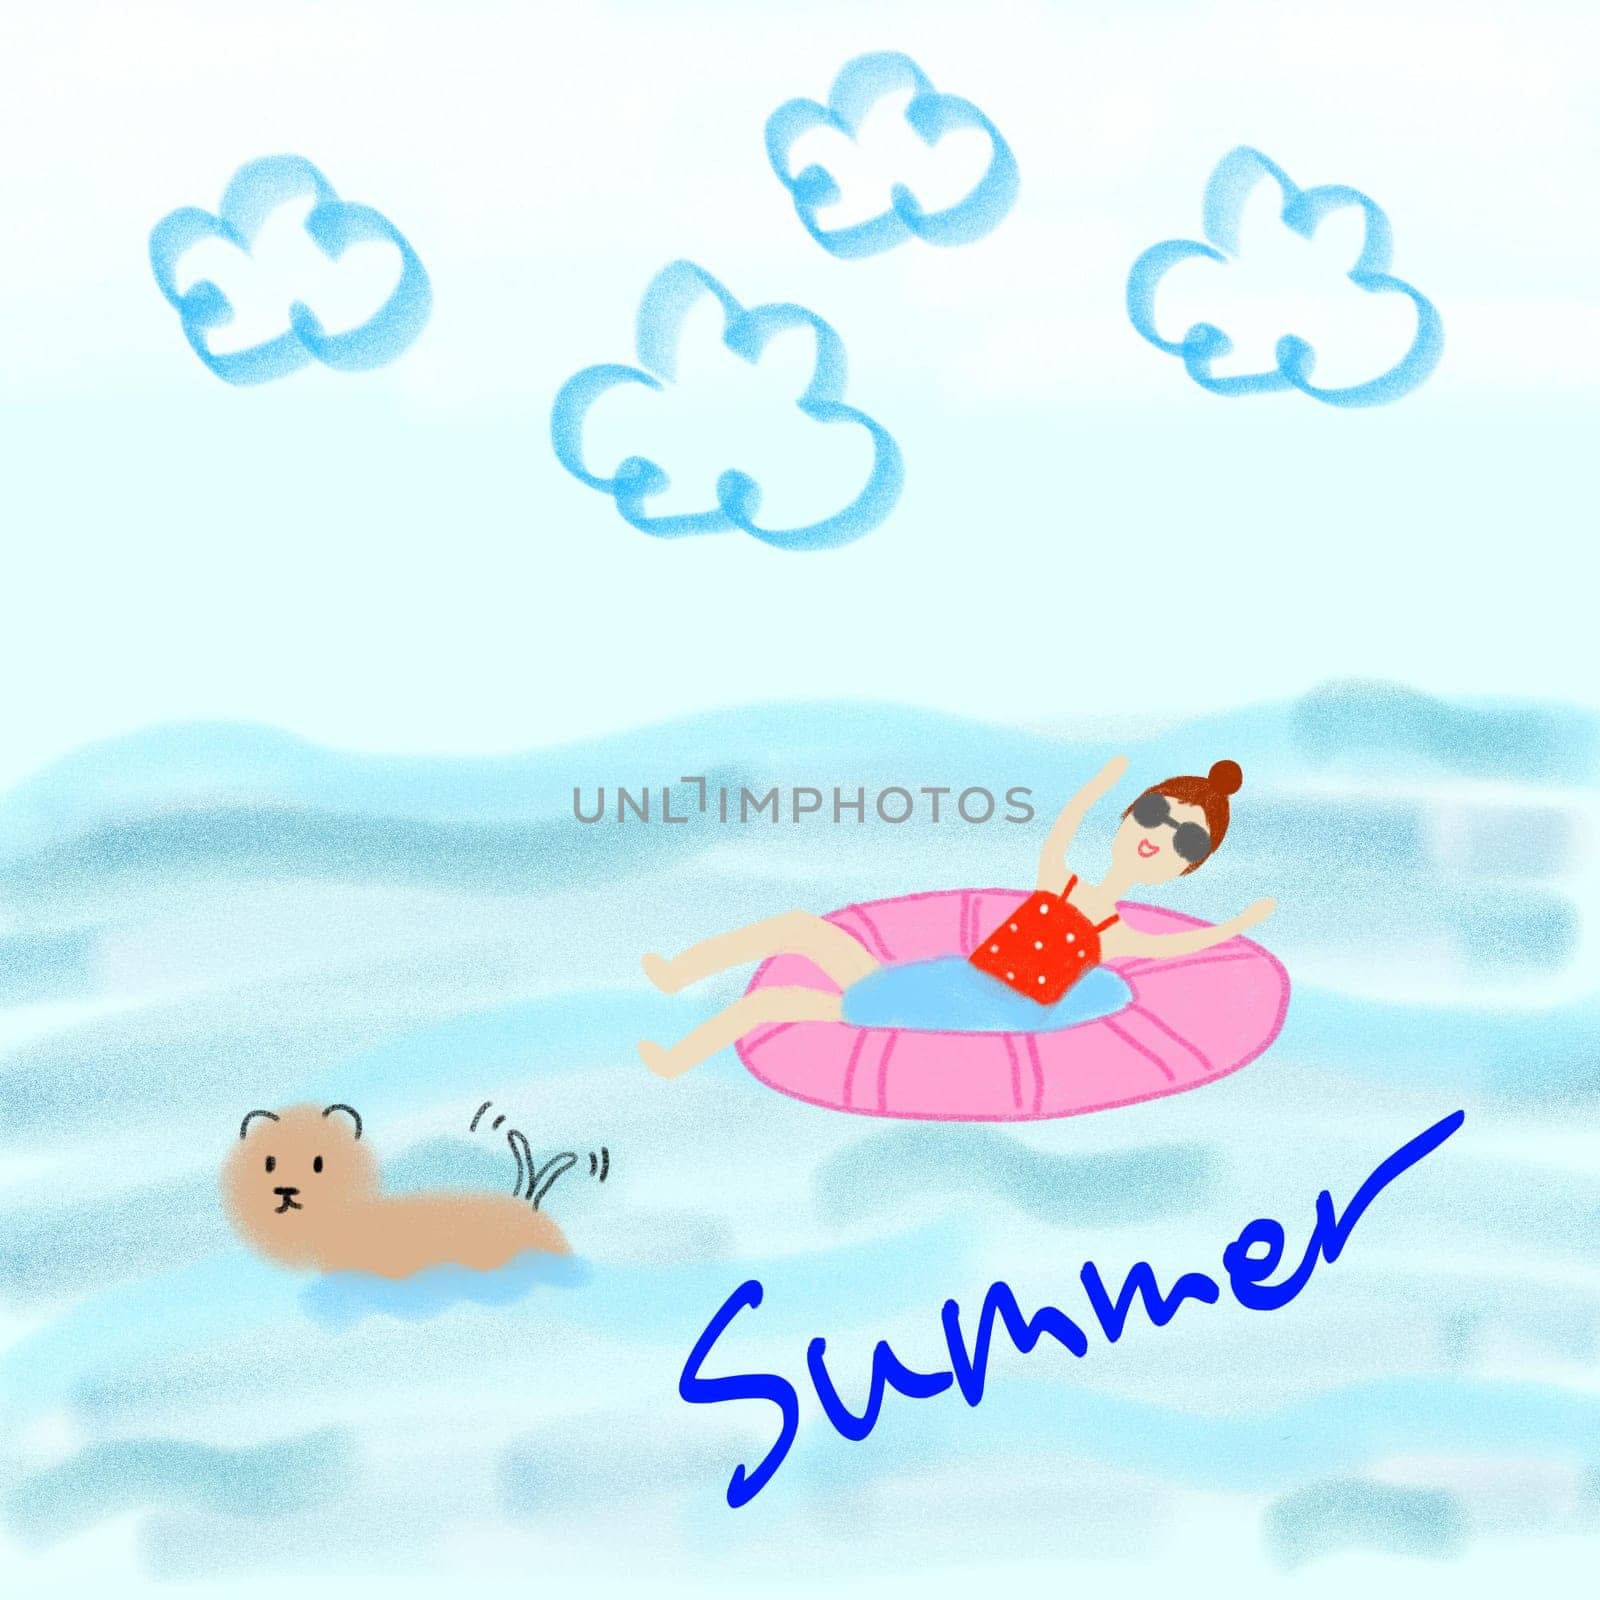 summer